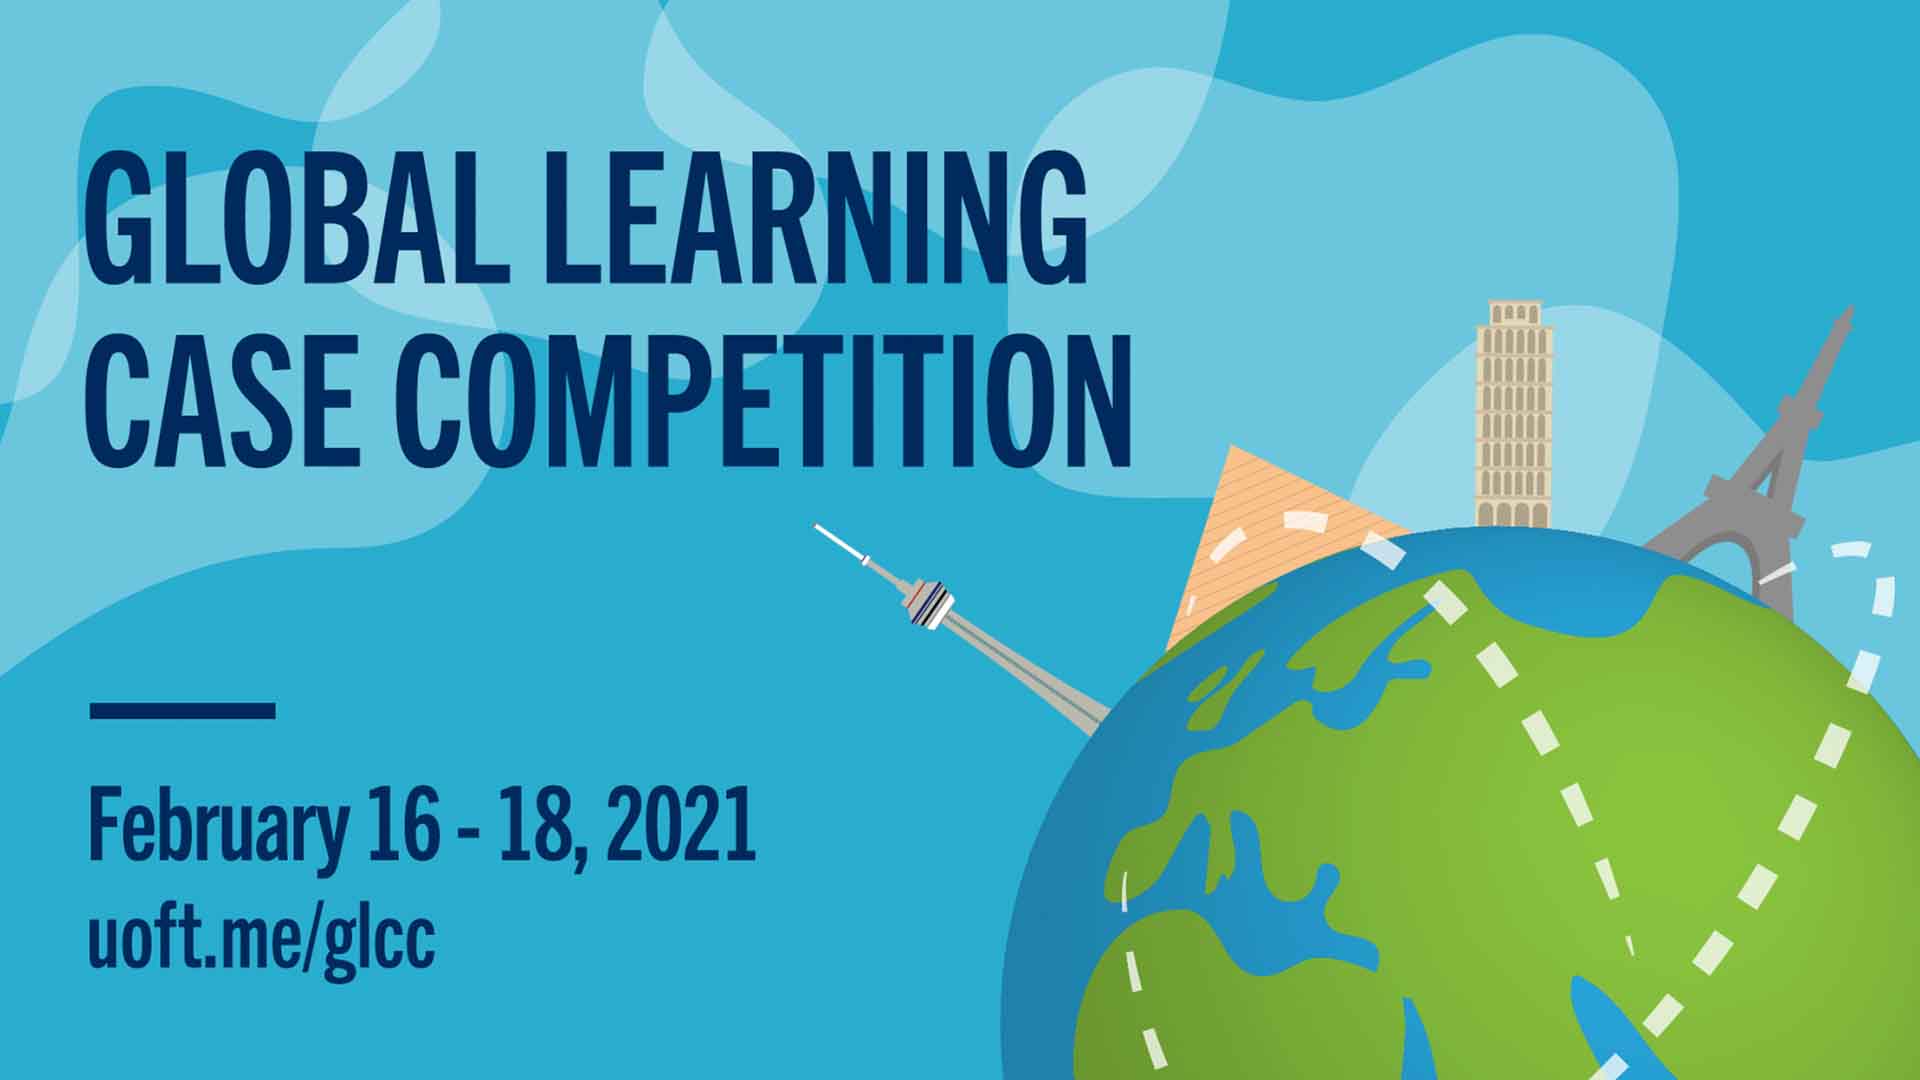 Ganan concurso internacional con propuesta de intercambios virtuales